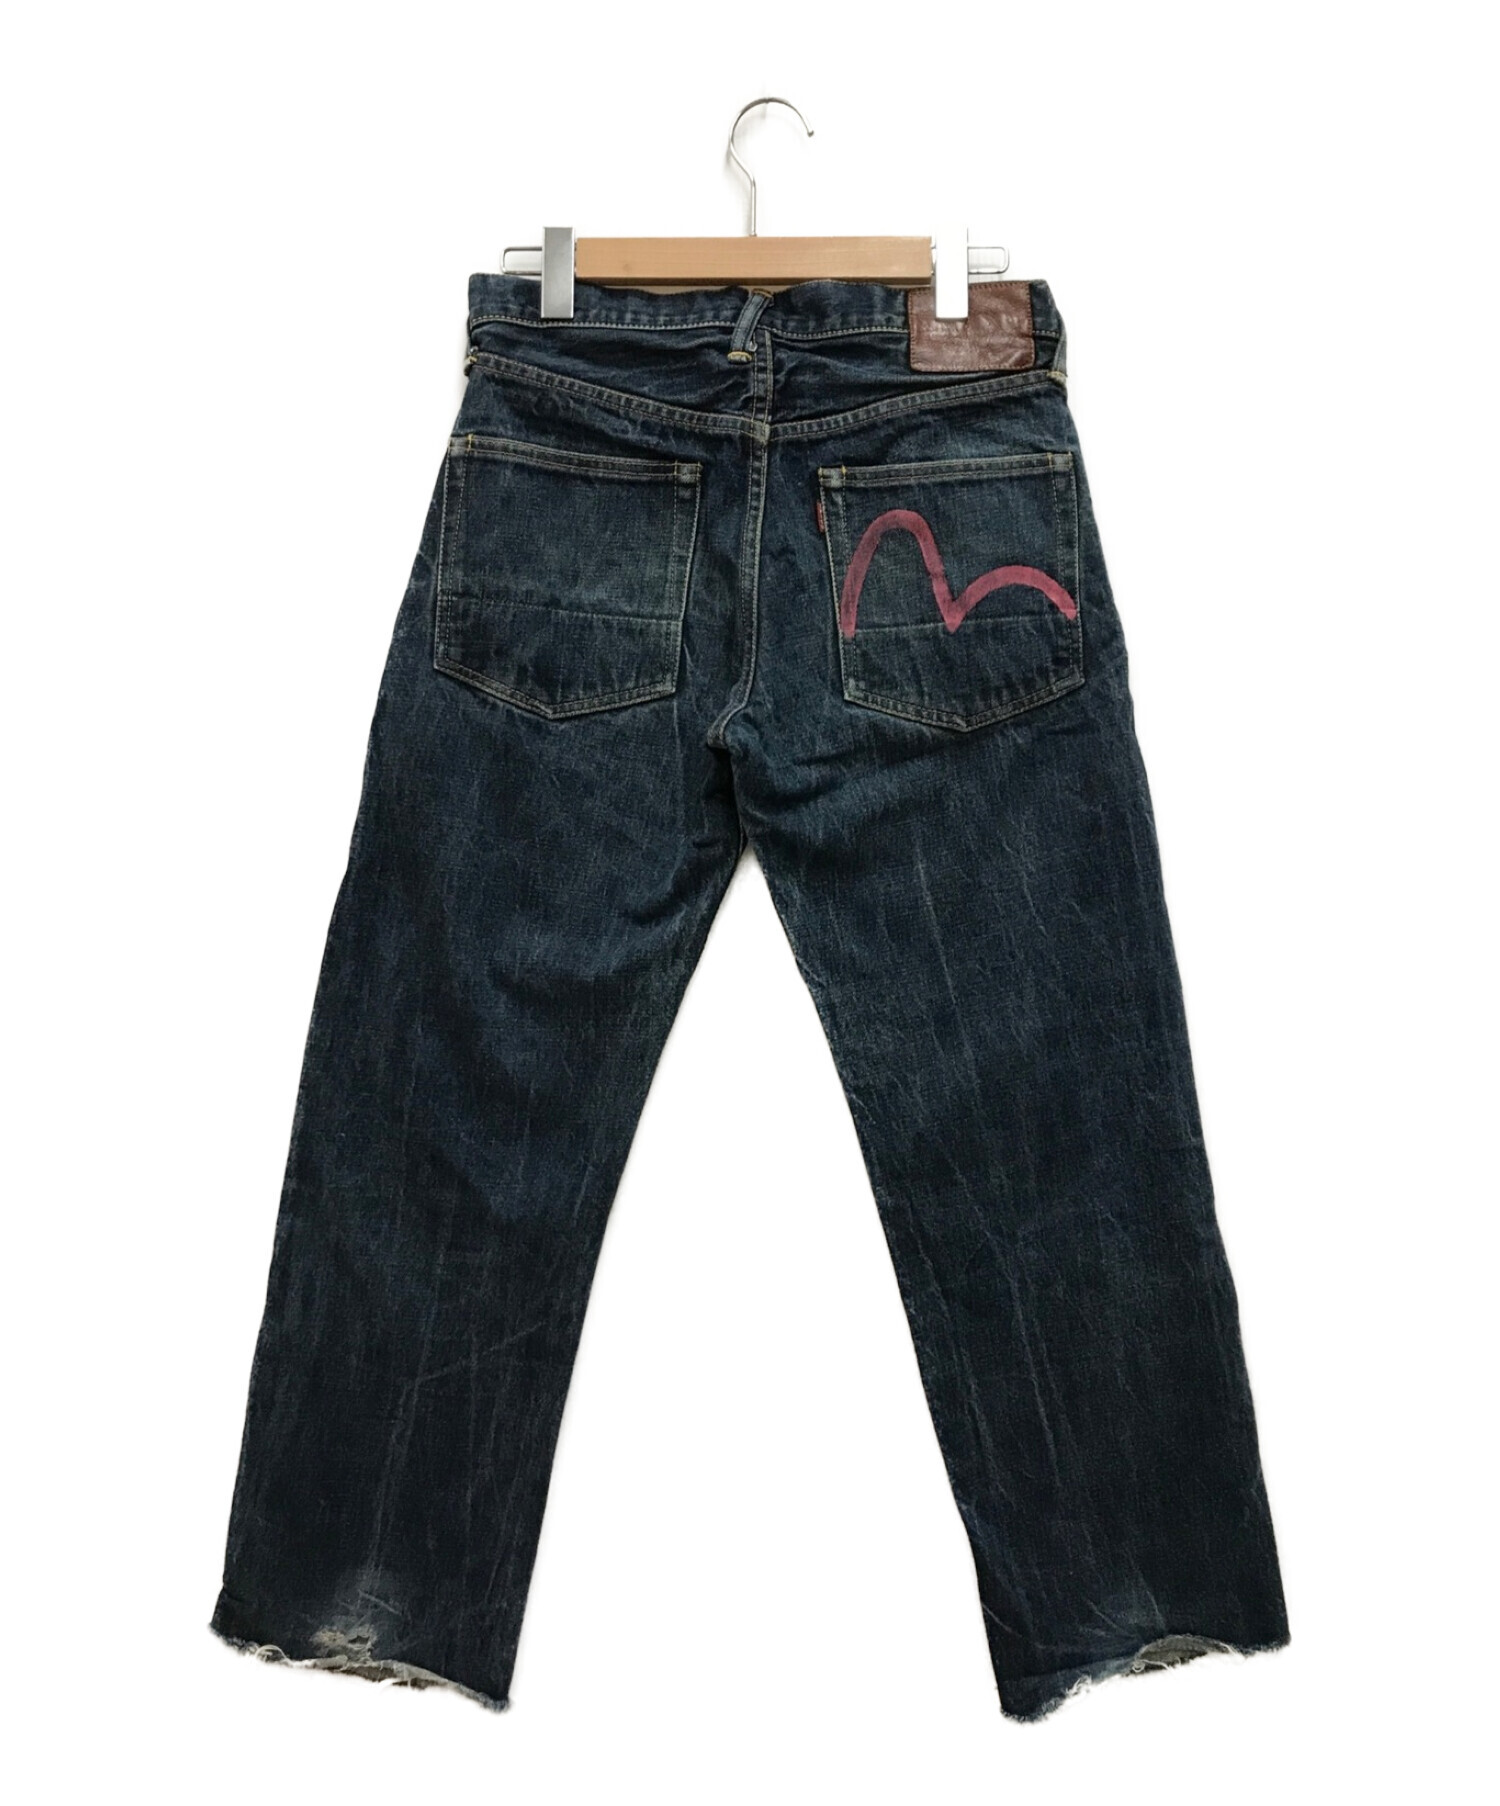 Evisu Jeans (エヴィスジーンズ) ジーンズ インディゴ サイズ:W30